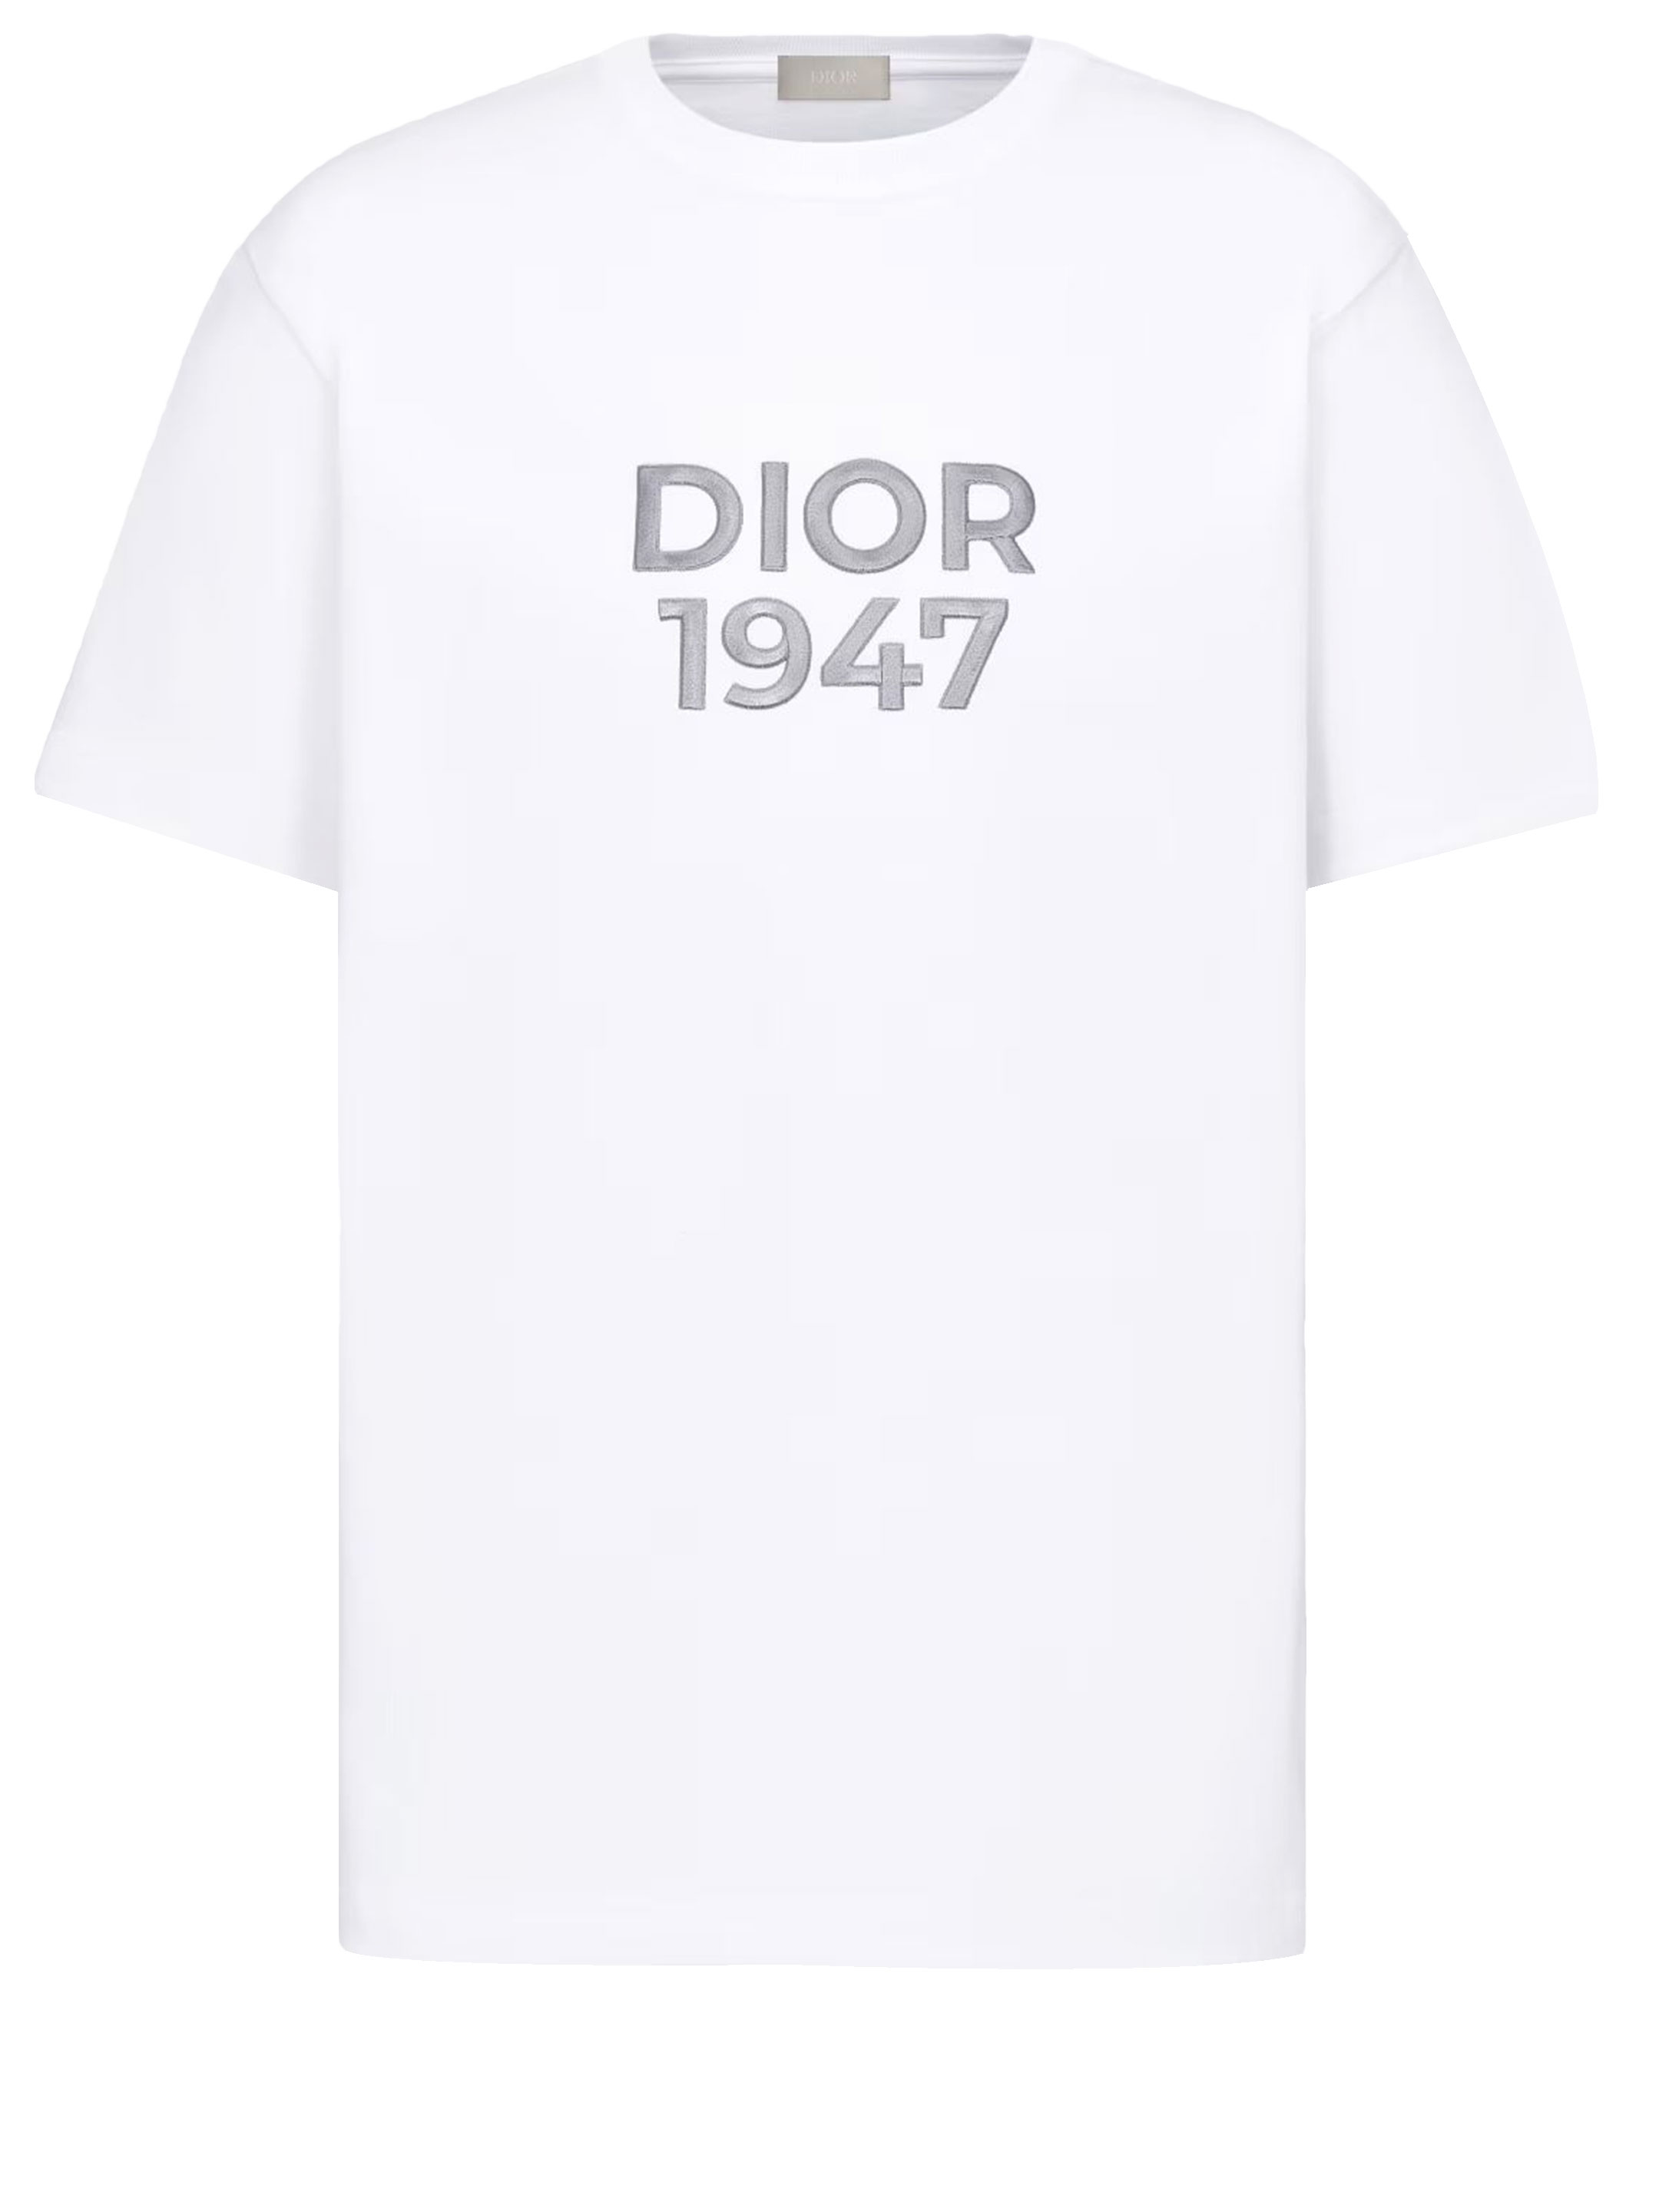 Dior 1947 Tshirt In White